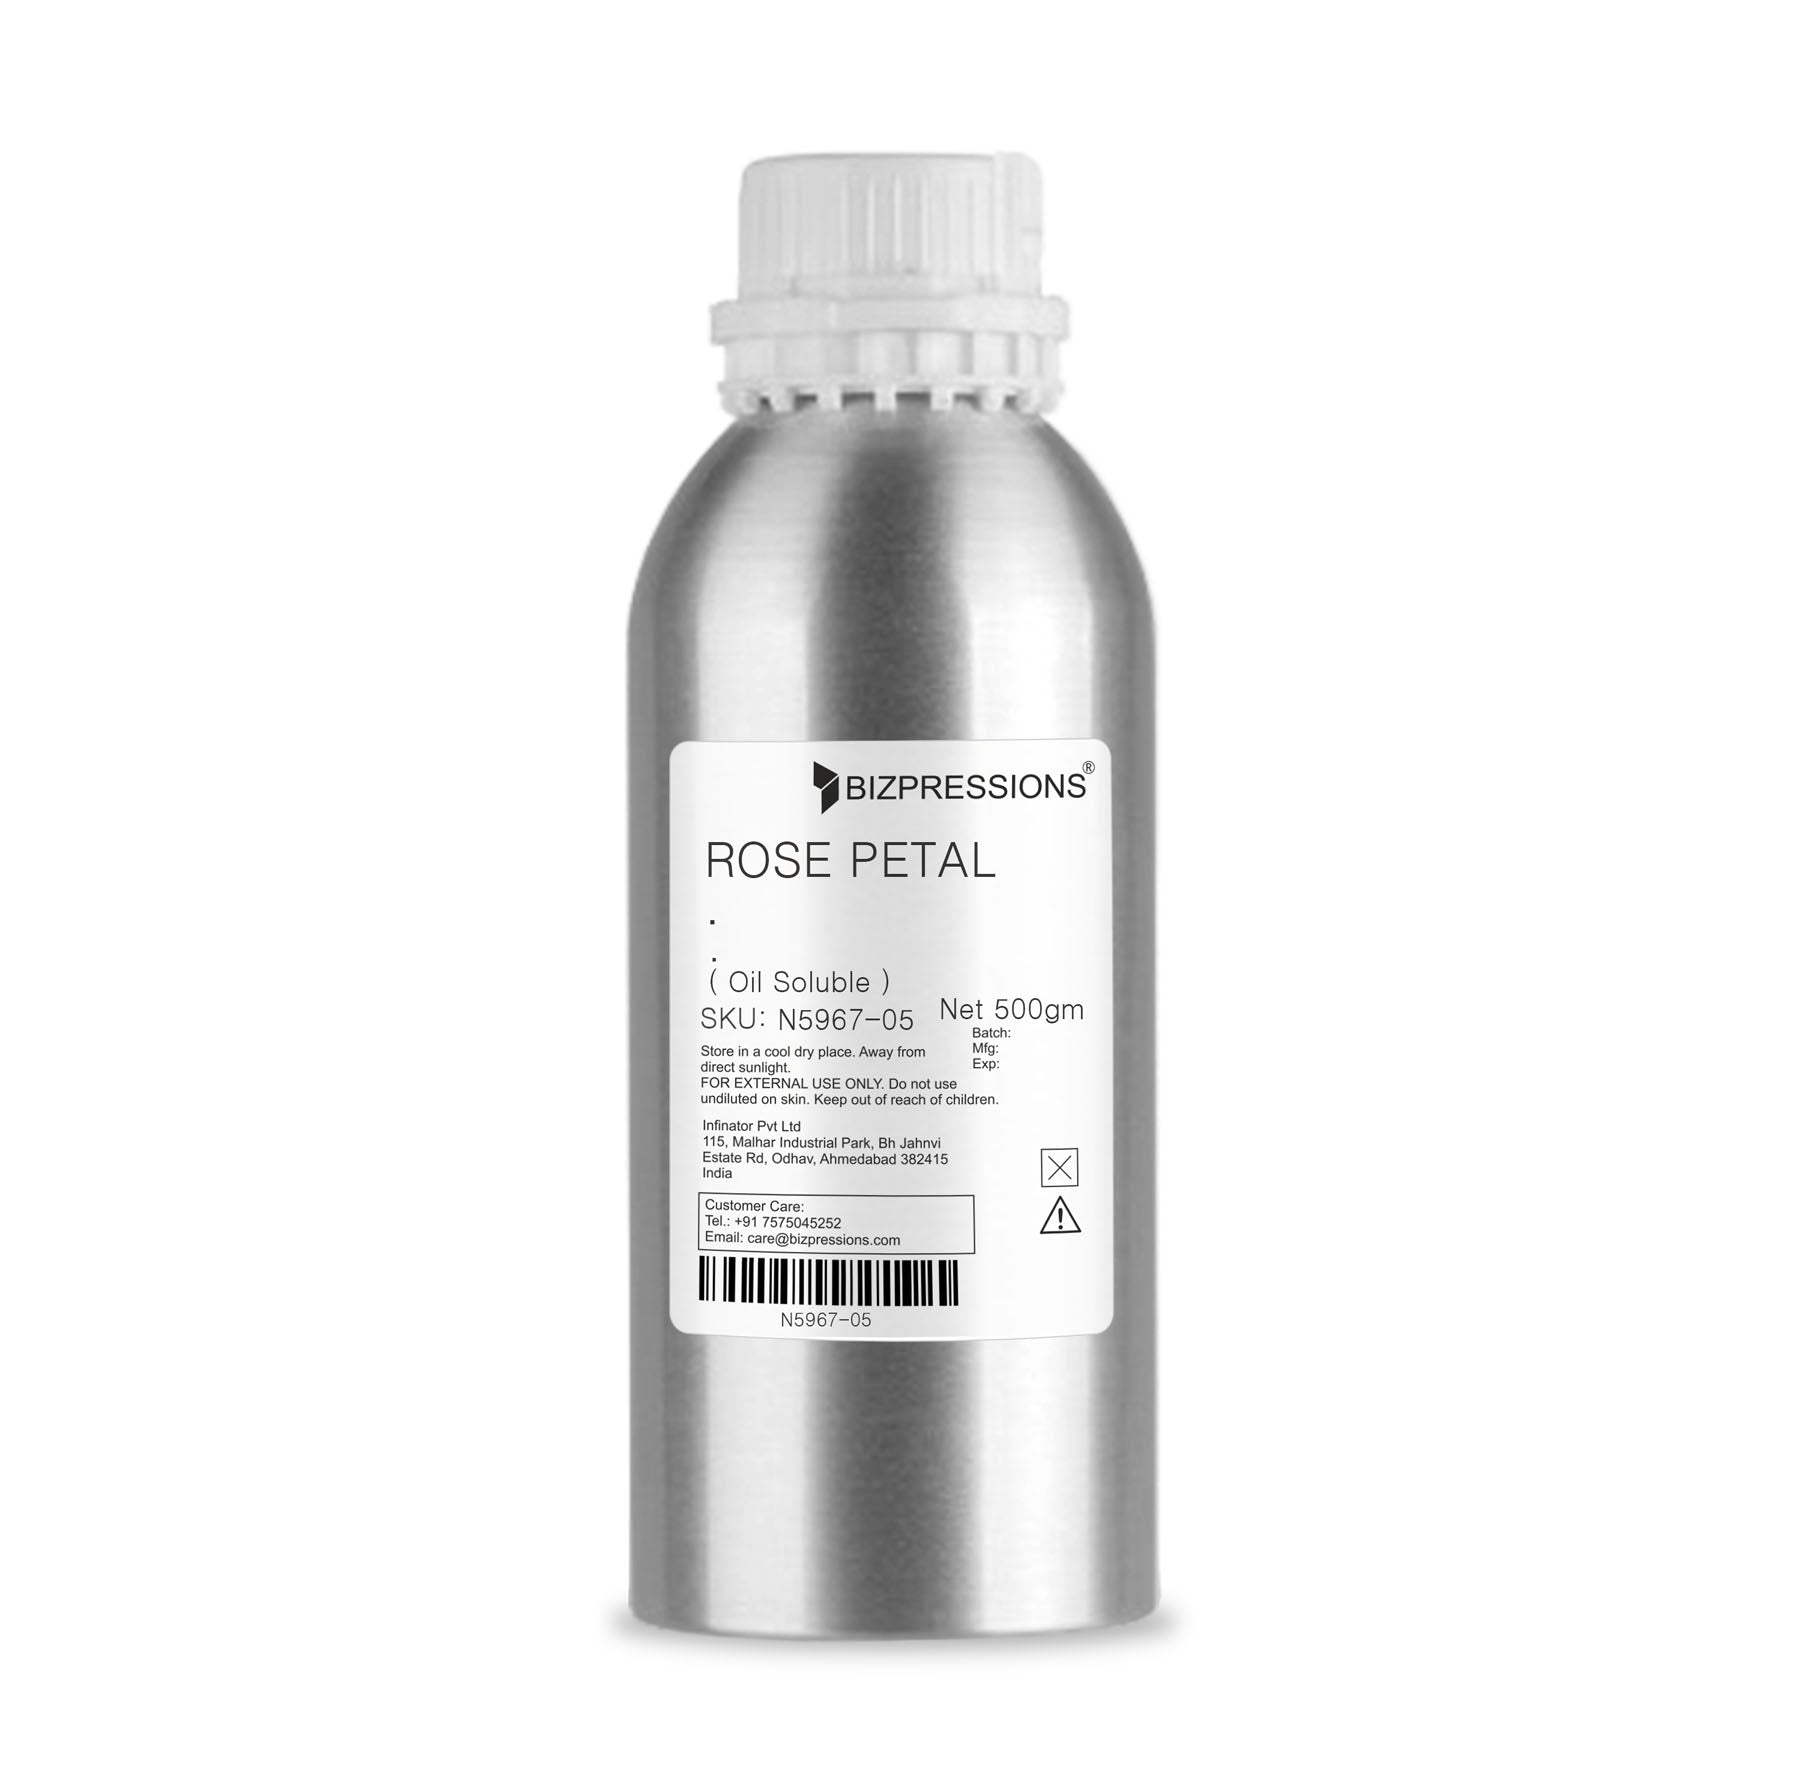 ROSE PETAL - Fragrance ( Oil Soluble ) - 500 gm